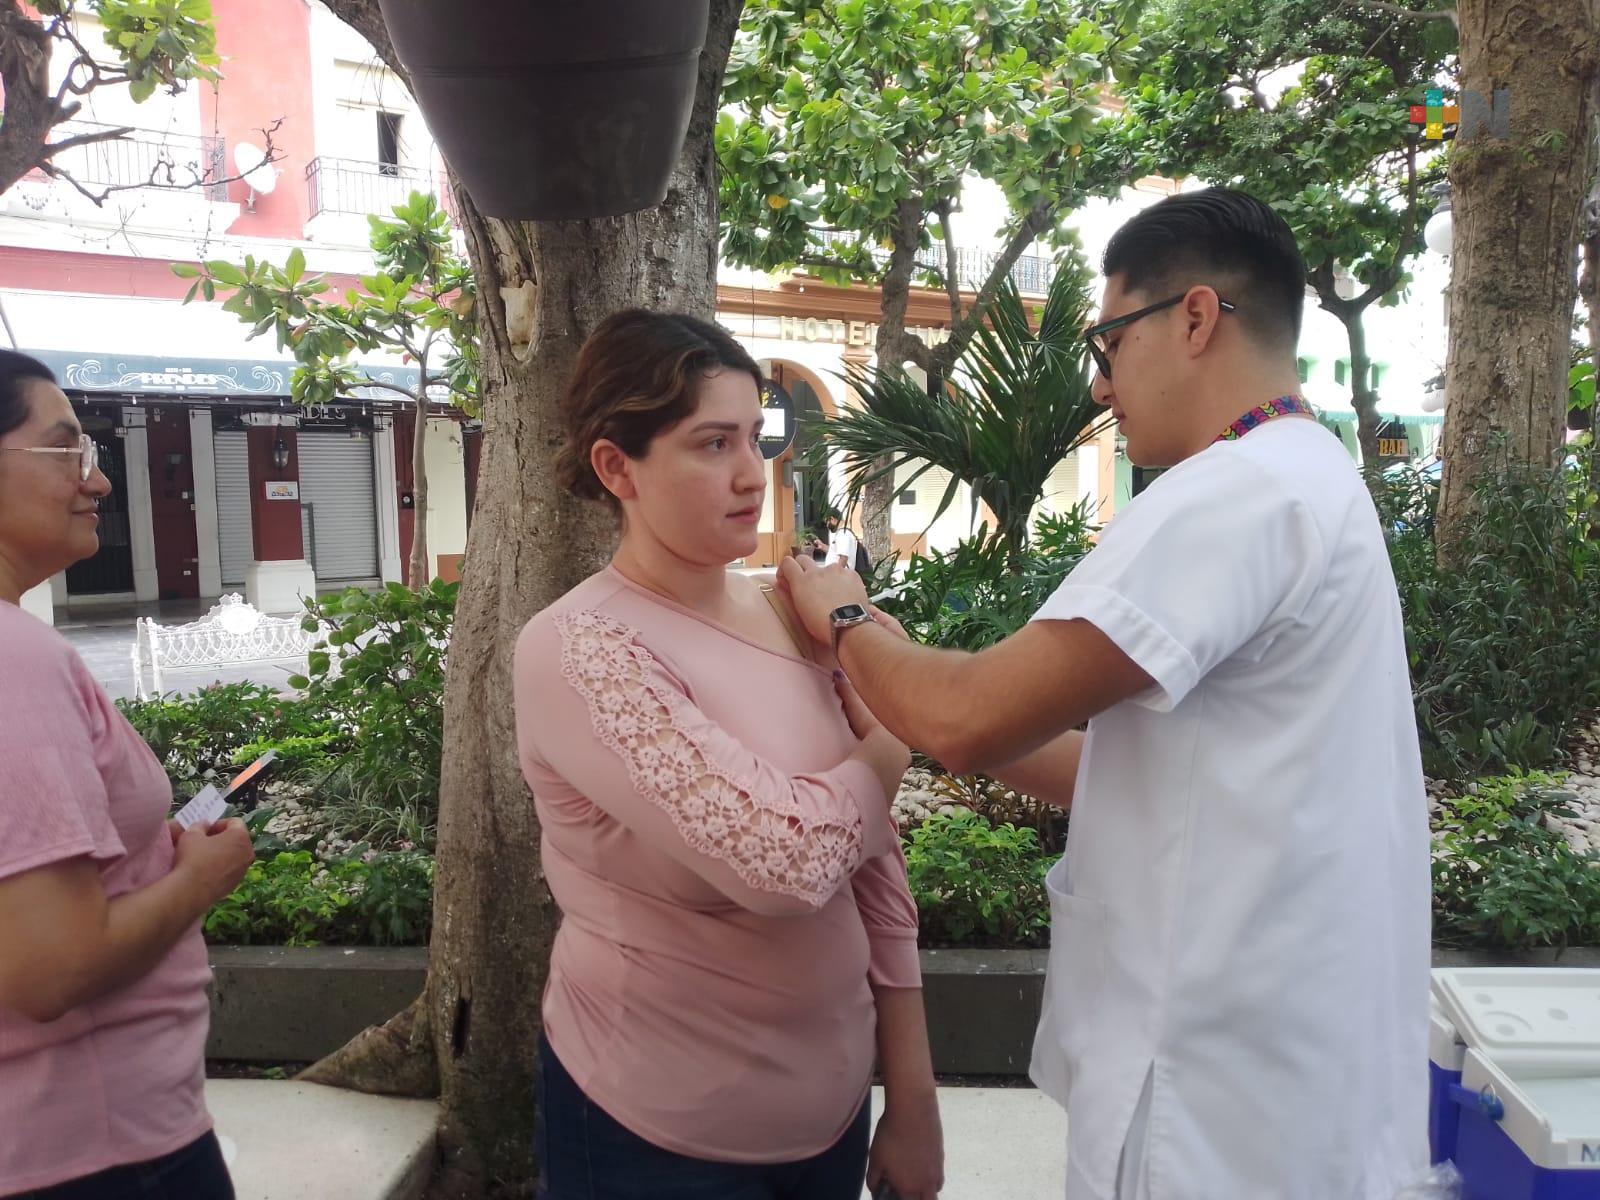 Jornada de vacunación contra la influenza llevan a cabo en zócalo de Veracruz puerto